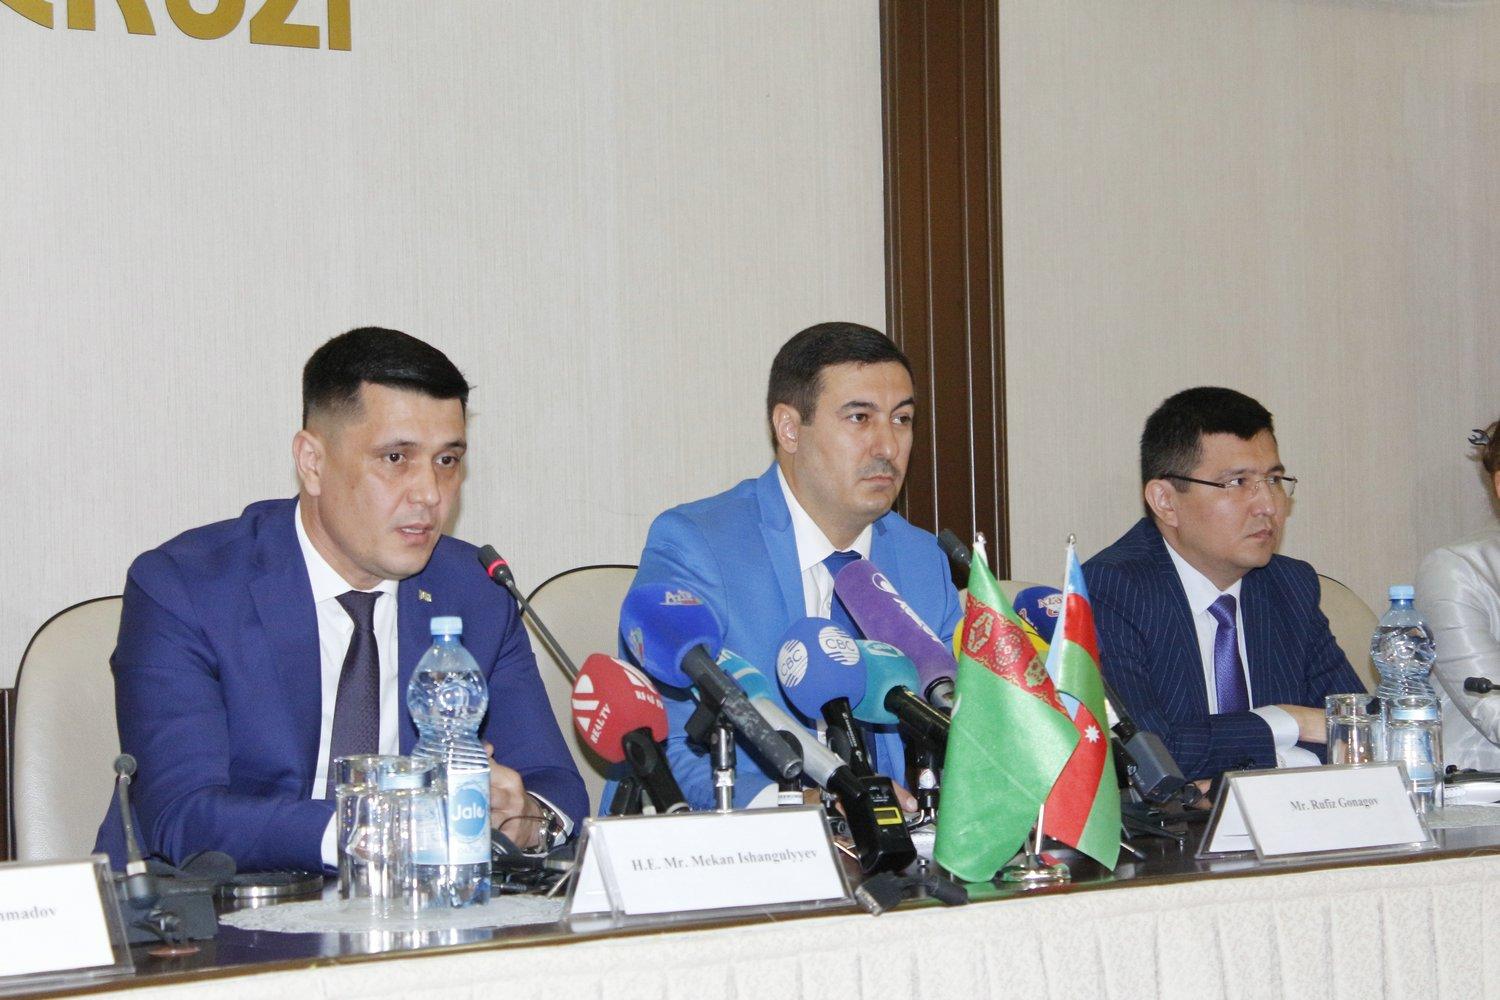 В Баку прошел круглый стол по 1-му Каспийскому экономическому форуму (ФОТО)